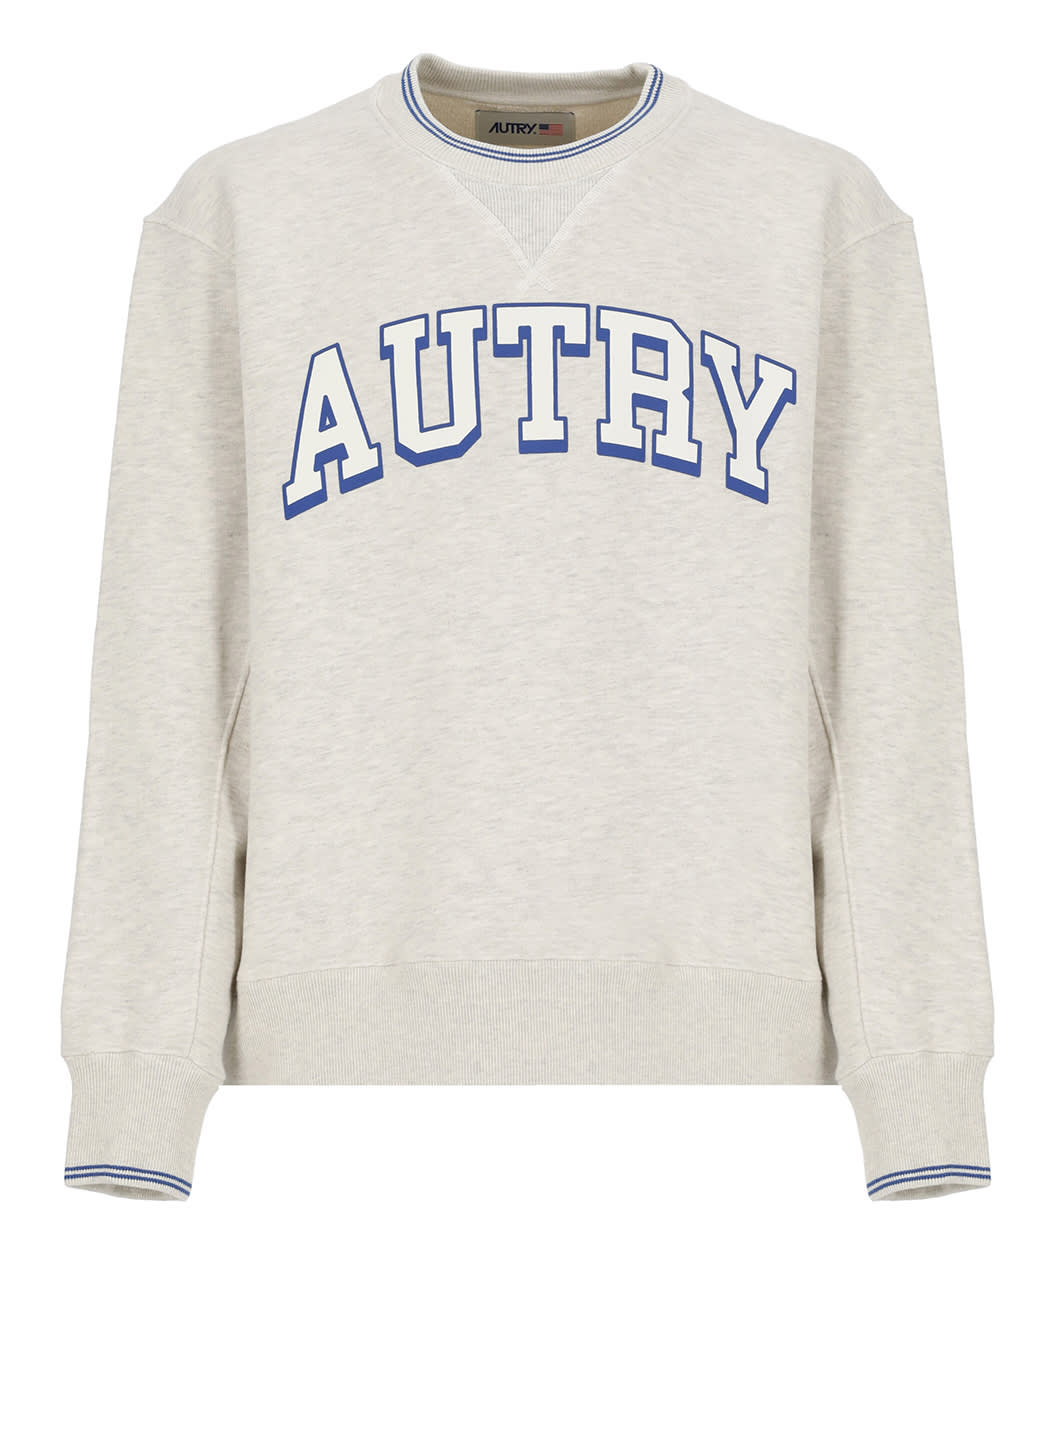 Shop Autry Main Sweatshirt In Grey